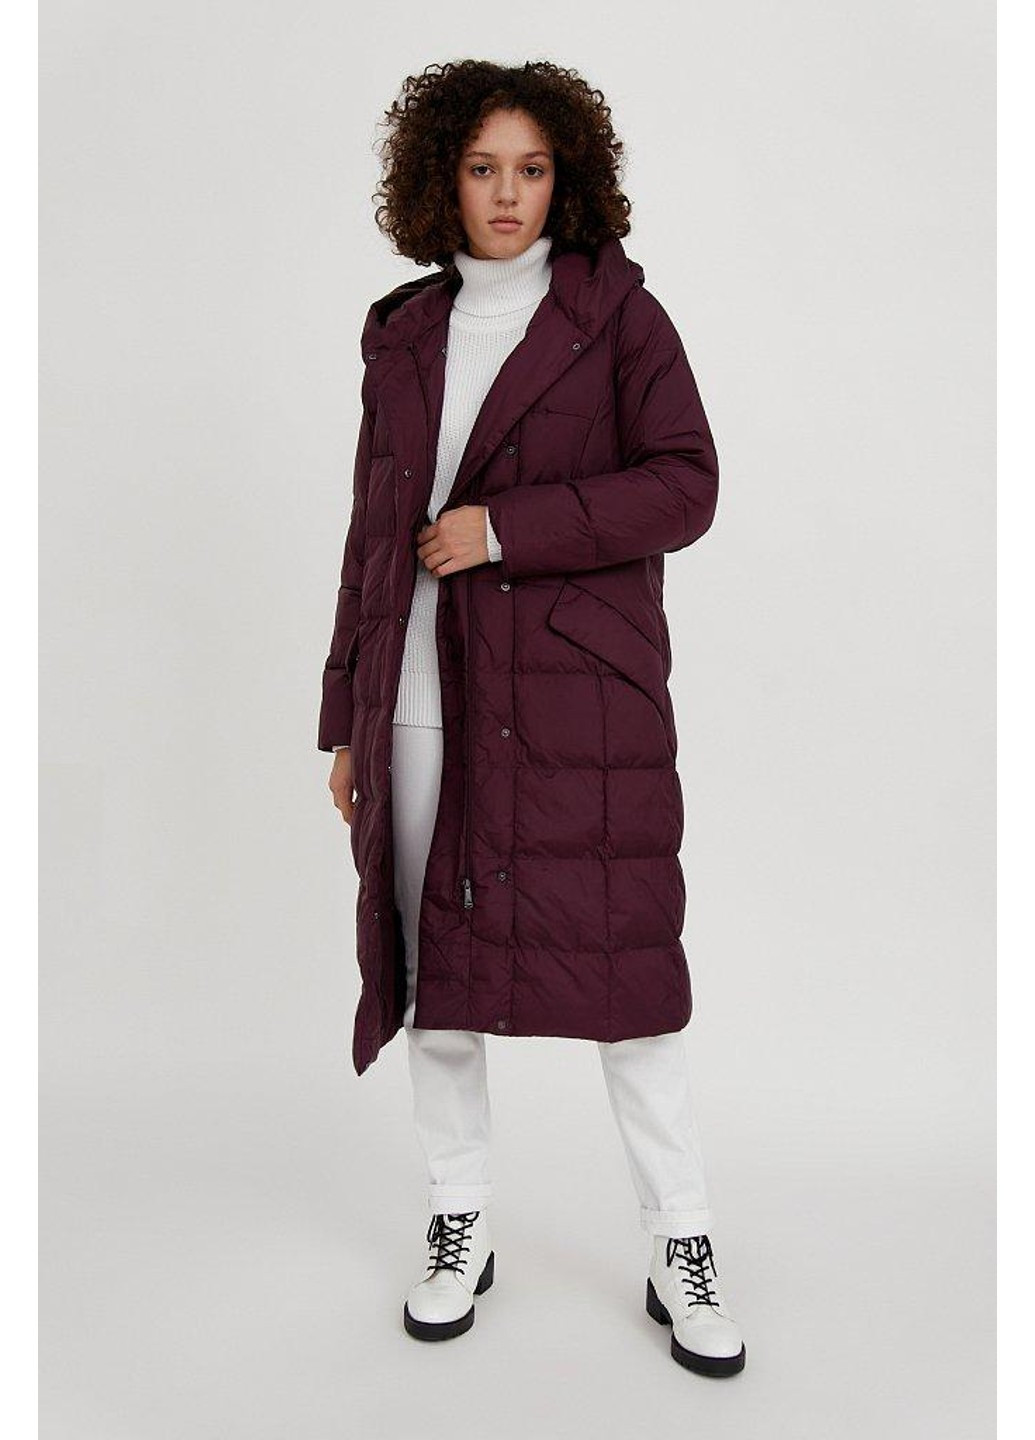 Бордовая зимняя зимнее пальто a20-12014-319 Finn Flare